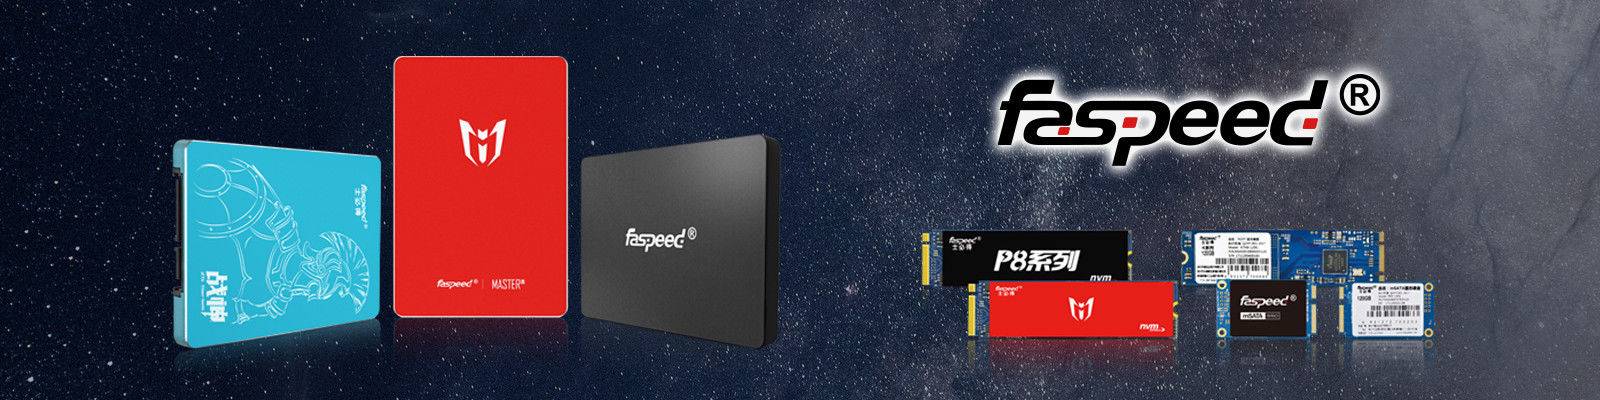 Dysk SSD Faspeed